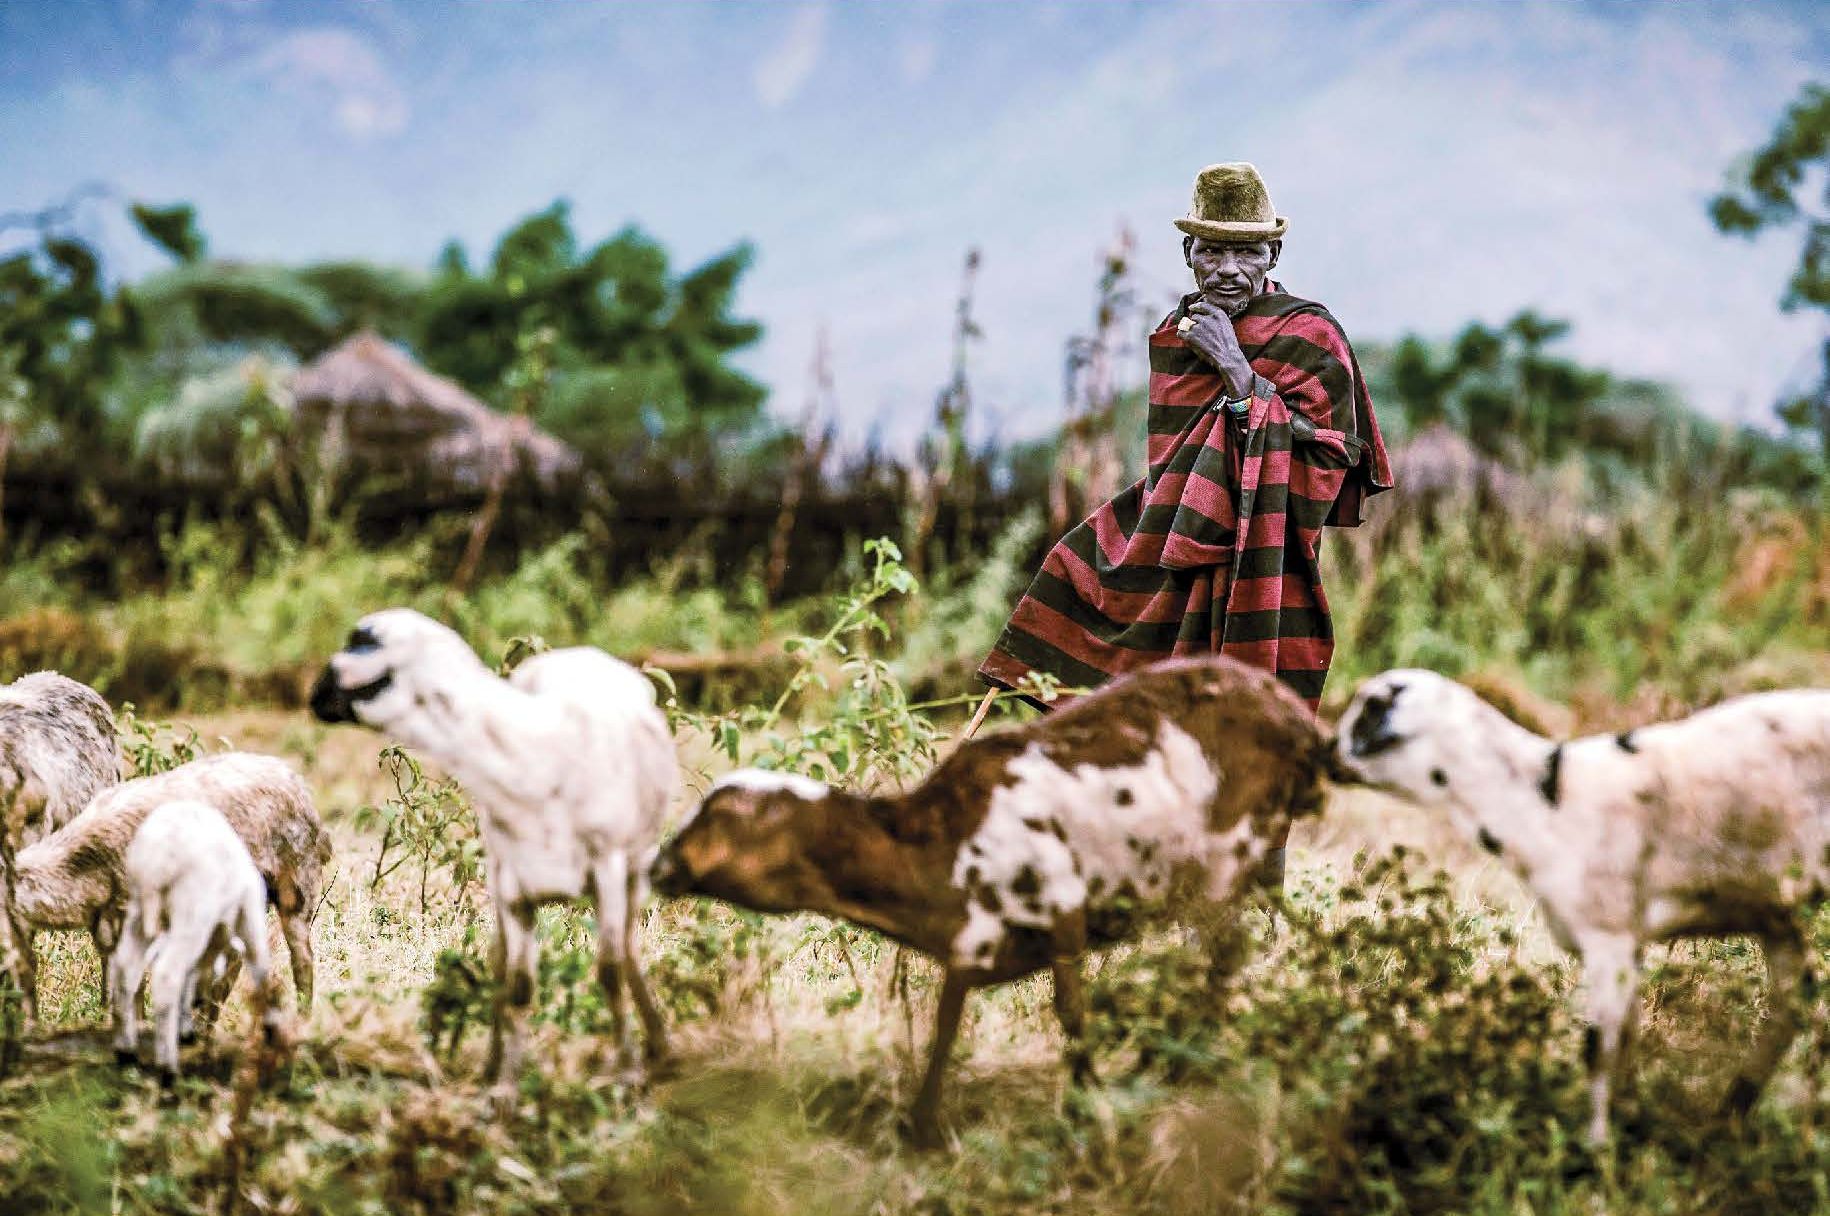 A Karamojong pastoralist man takes his goat cattle to graze next to the village of Kochunoi, Uganda ©FAO/Luis Tato